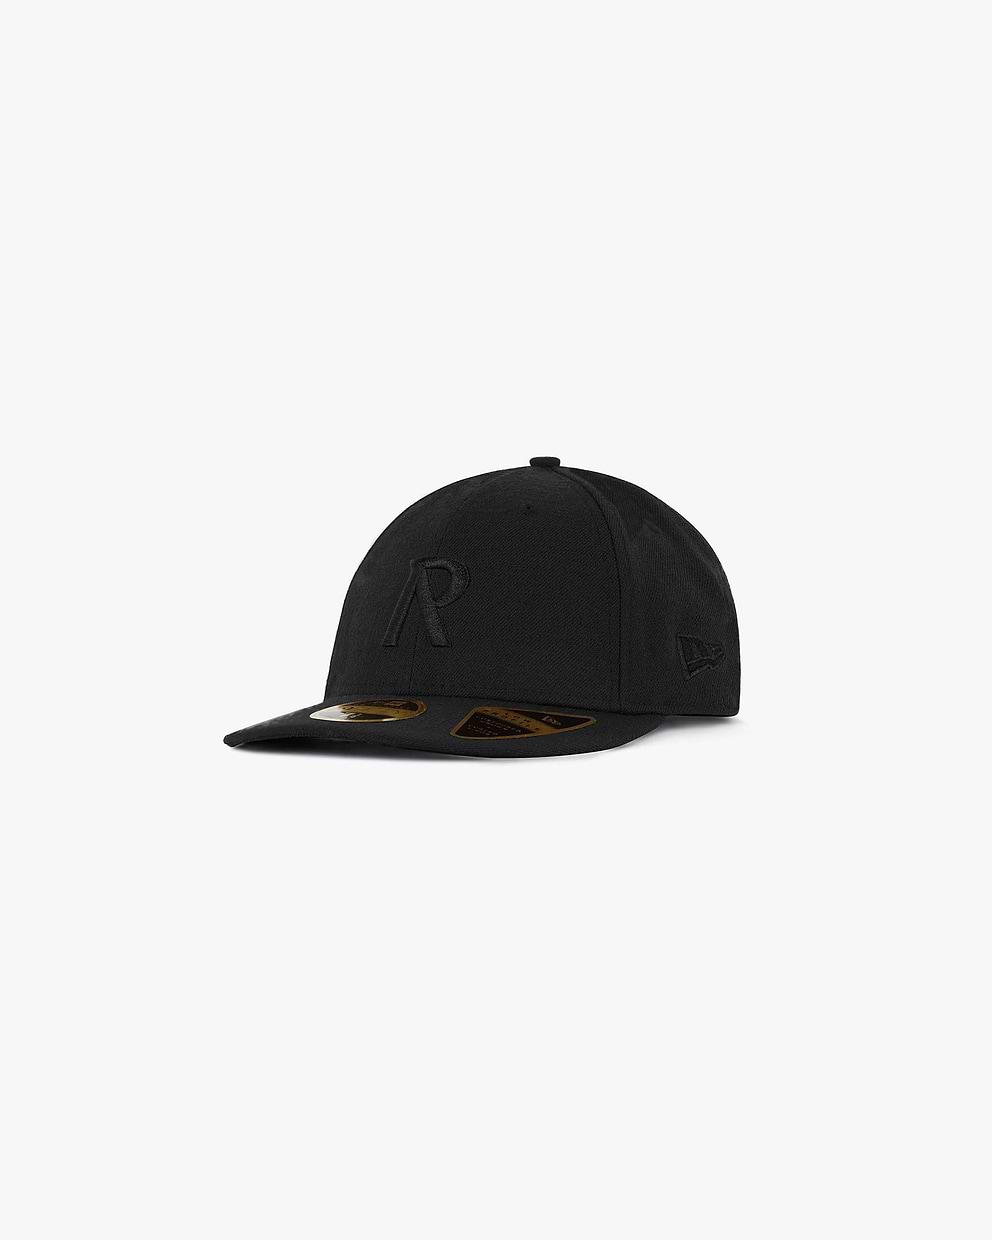 Initial New Era 59Fifty Cap - All Black